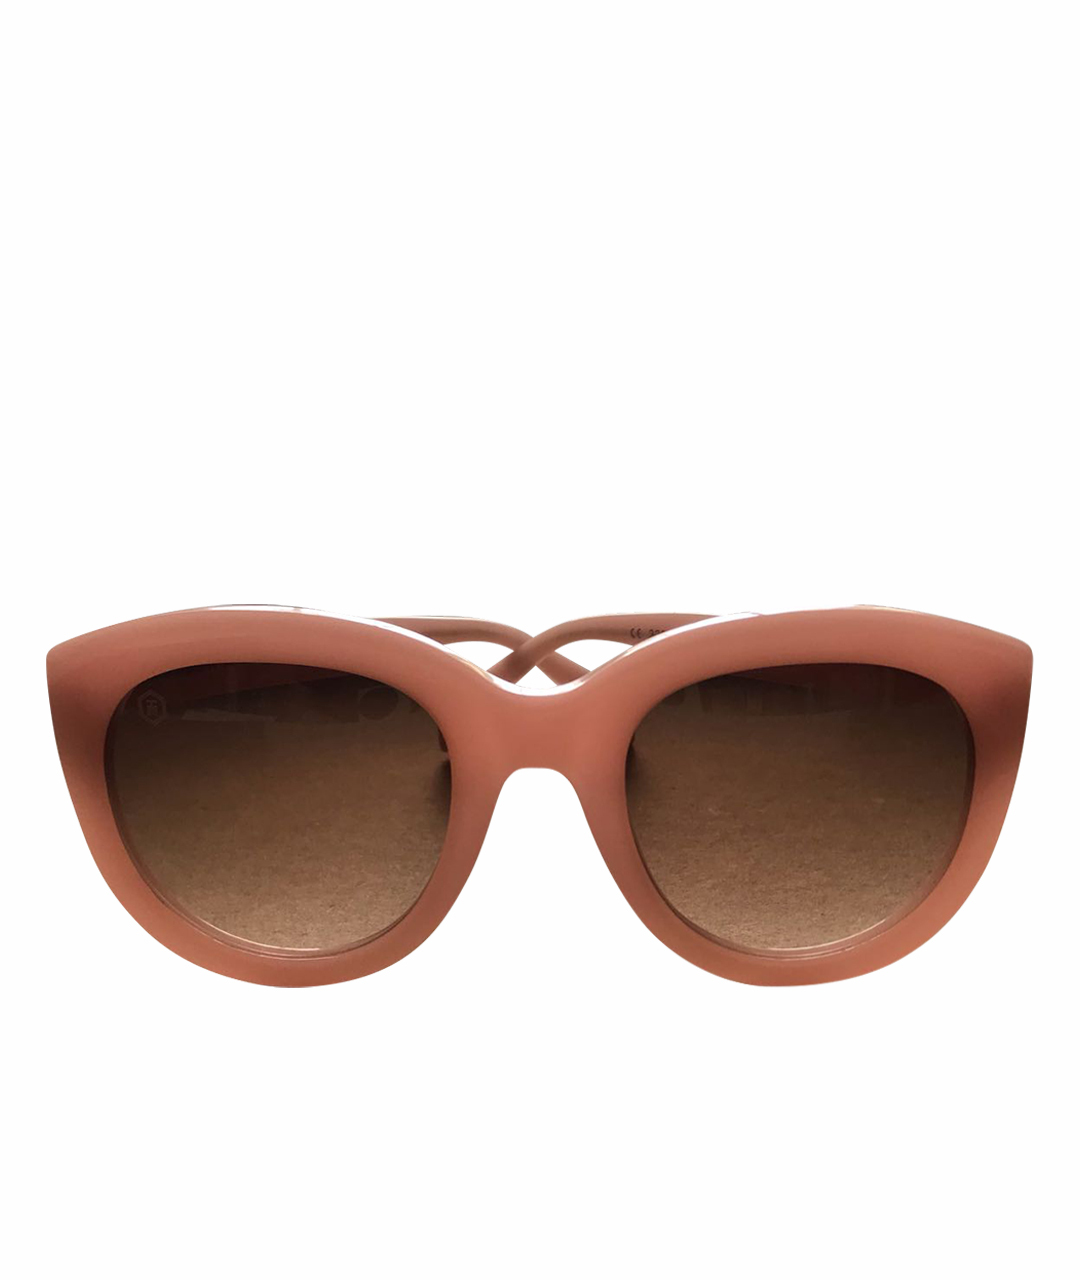 TAYLOR Розовые пластиковые солнцезащитные очки, фото 1